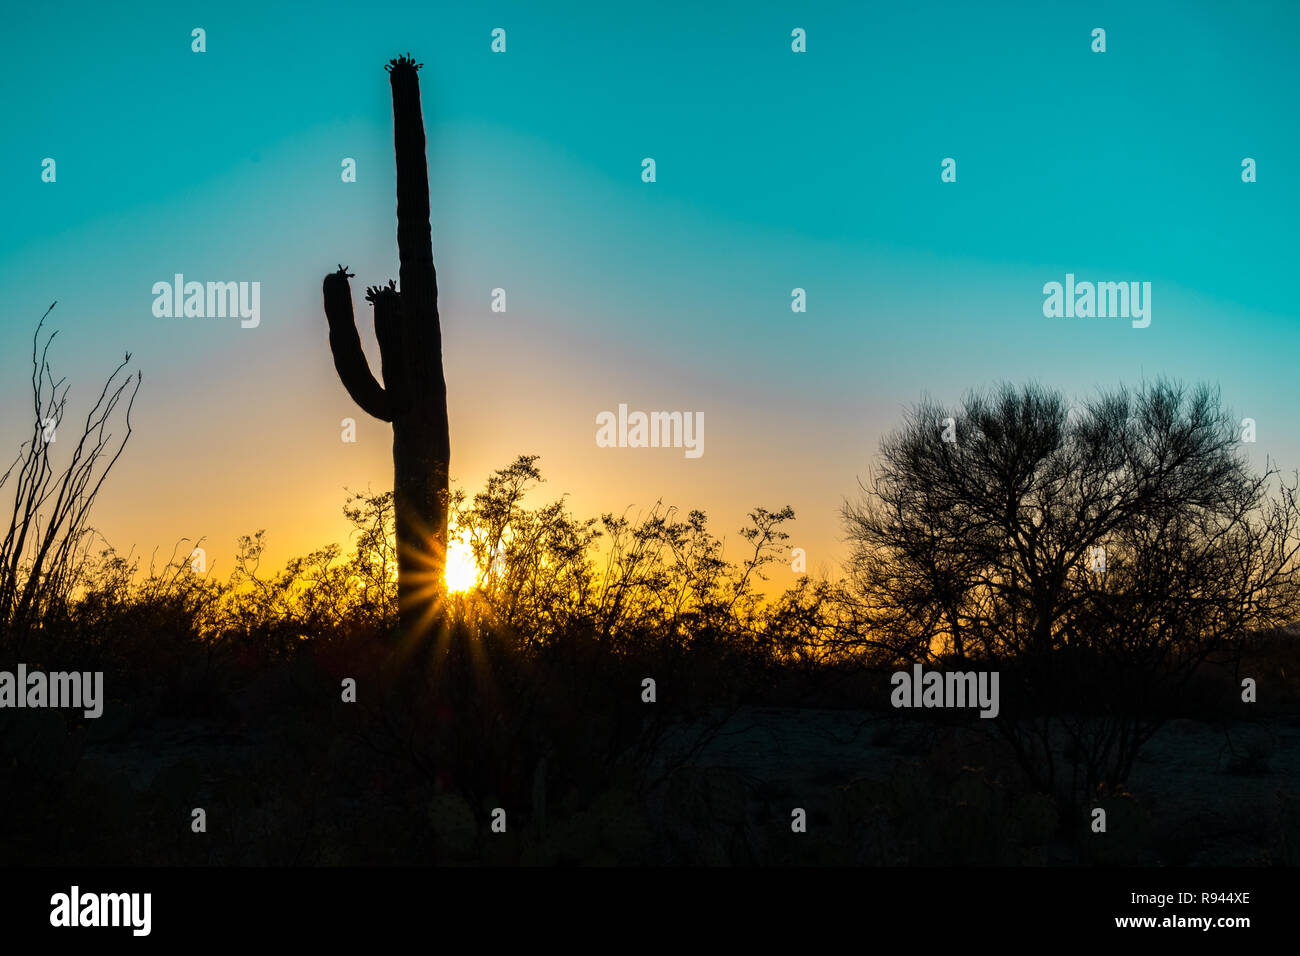 Silhouette Du Cactus Géant Saguaro Au Lever Ou Au Coucher Du